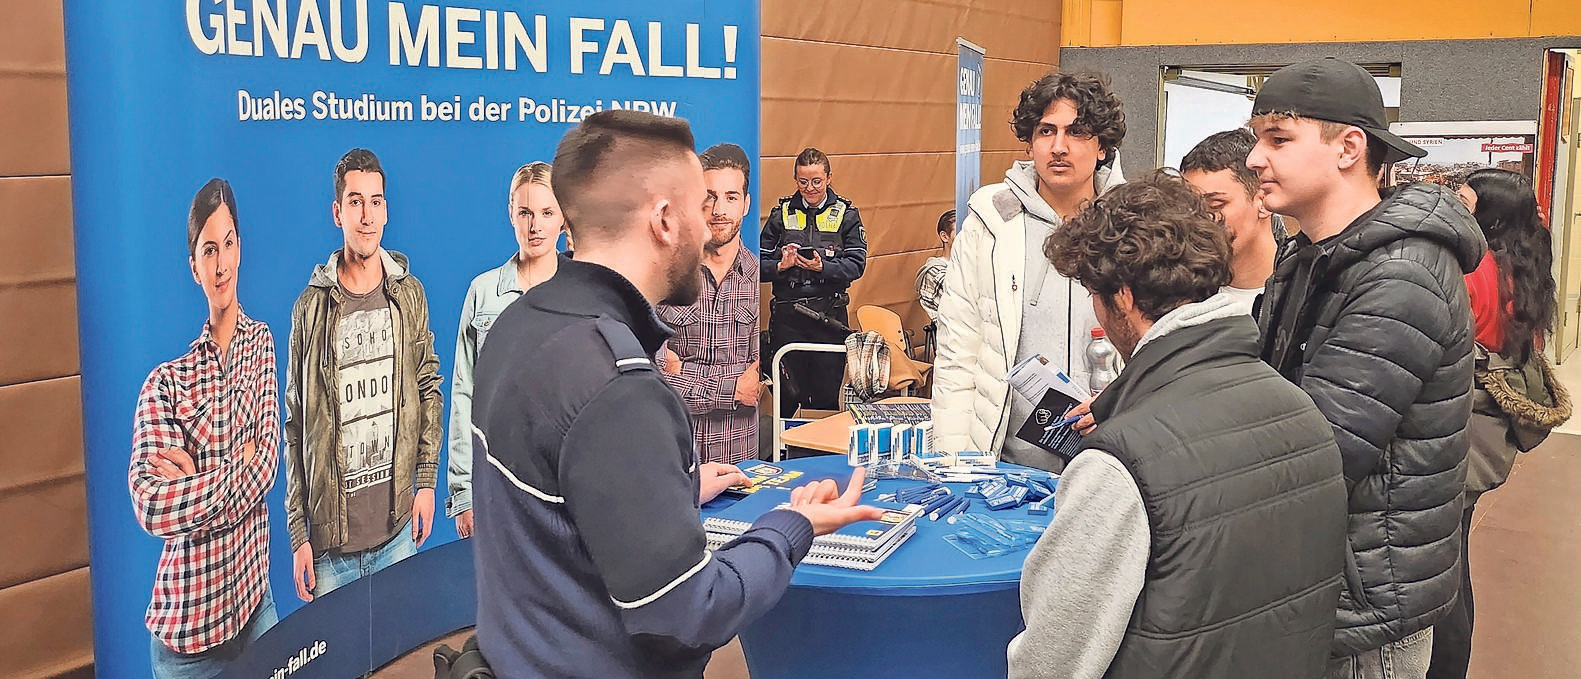 Für jeden etwas dabei: Auch die Polizei wirbt beim Berufsinfomarkt in Jülich um künftige Auszubildende. FOTO: STADT JÜLICH